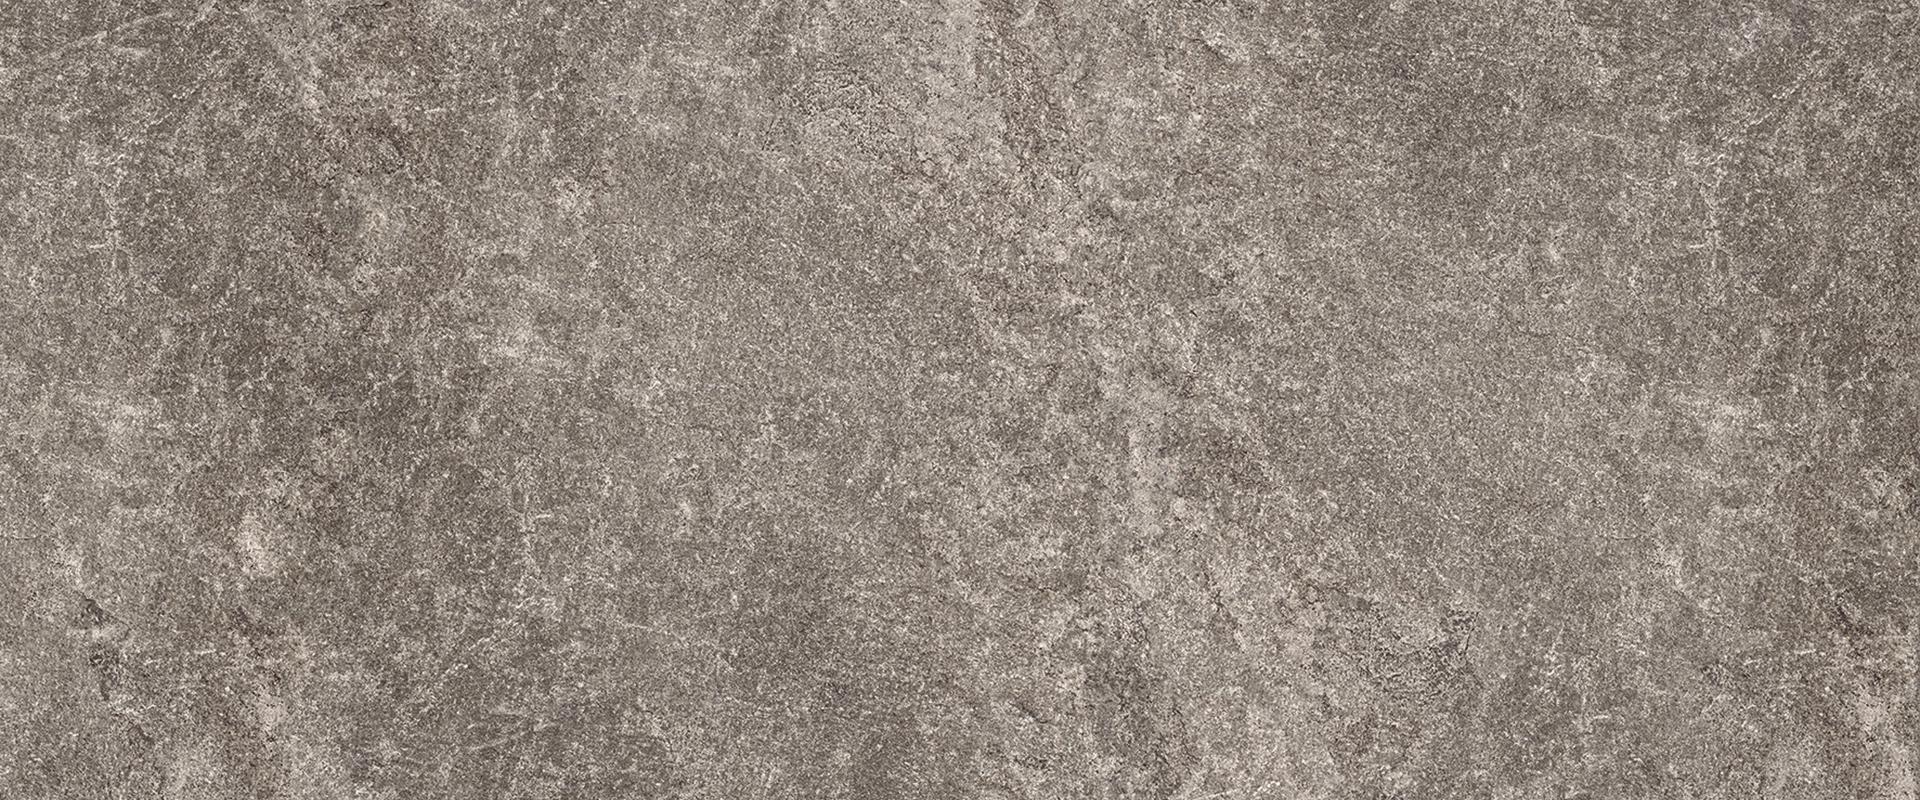 Oros Stone: Fondo Anthracite Field Tile (24"x24"x9.5-mm | tecnica)